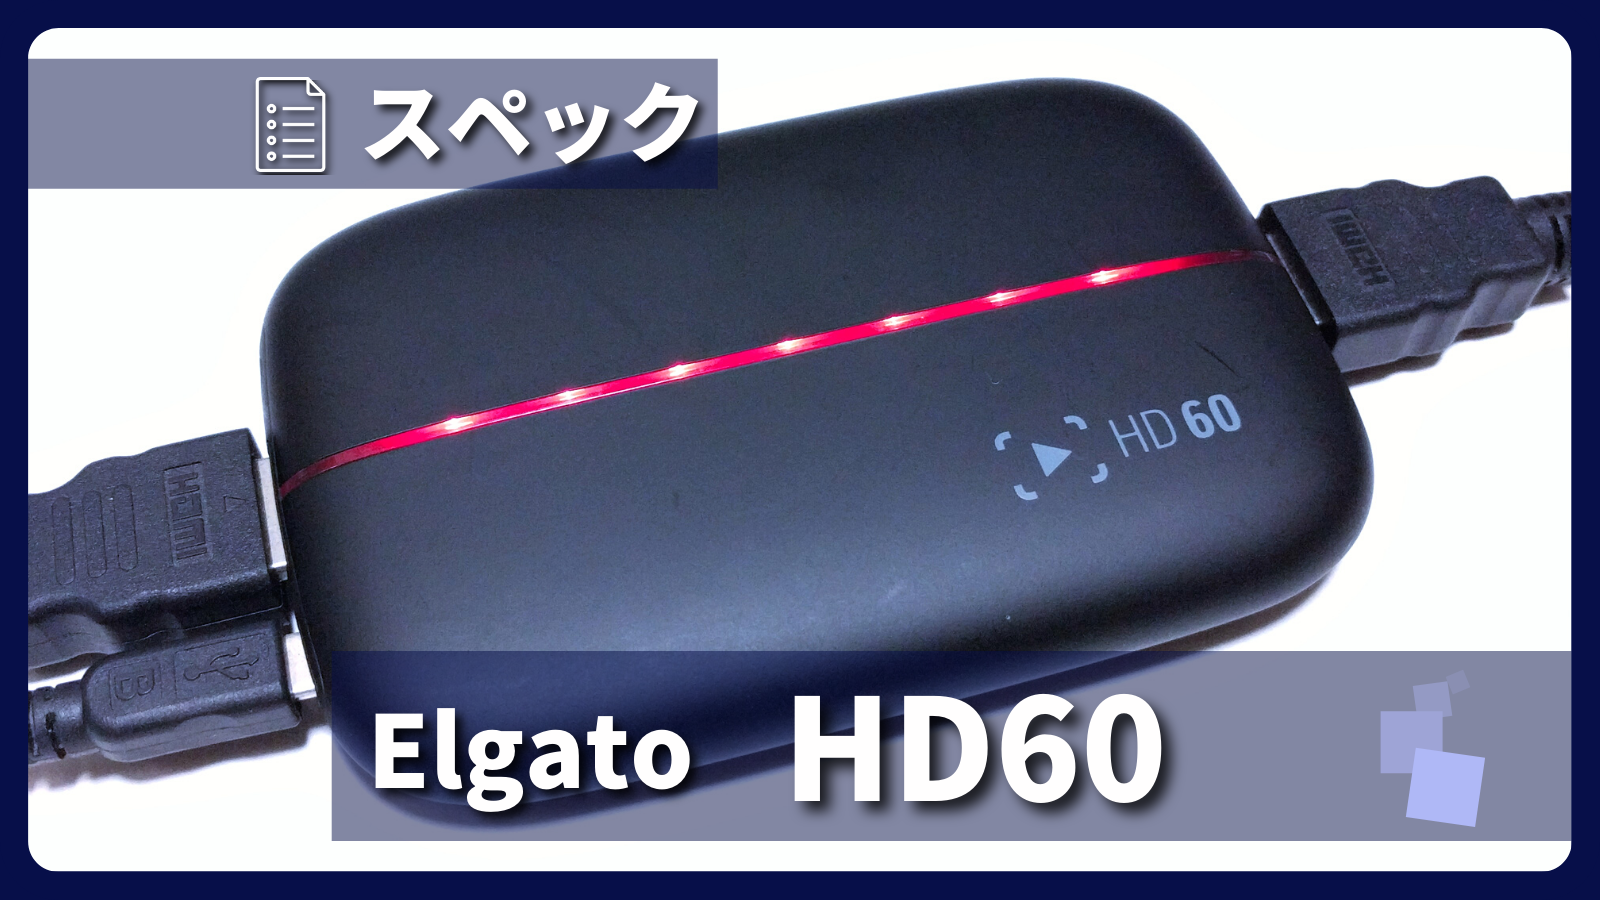 アイキャッチ画像・Elgato Game Capture HD60 スペック紹介